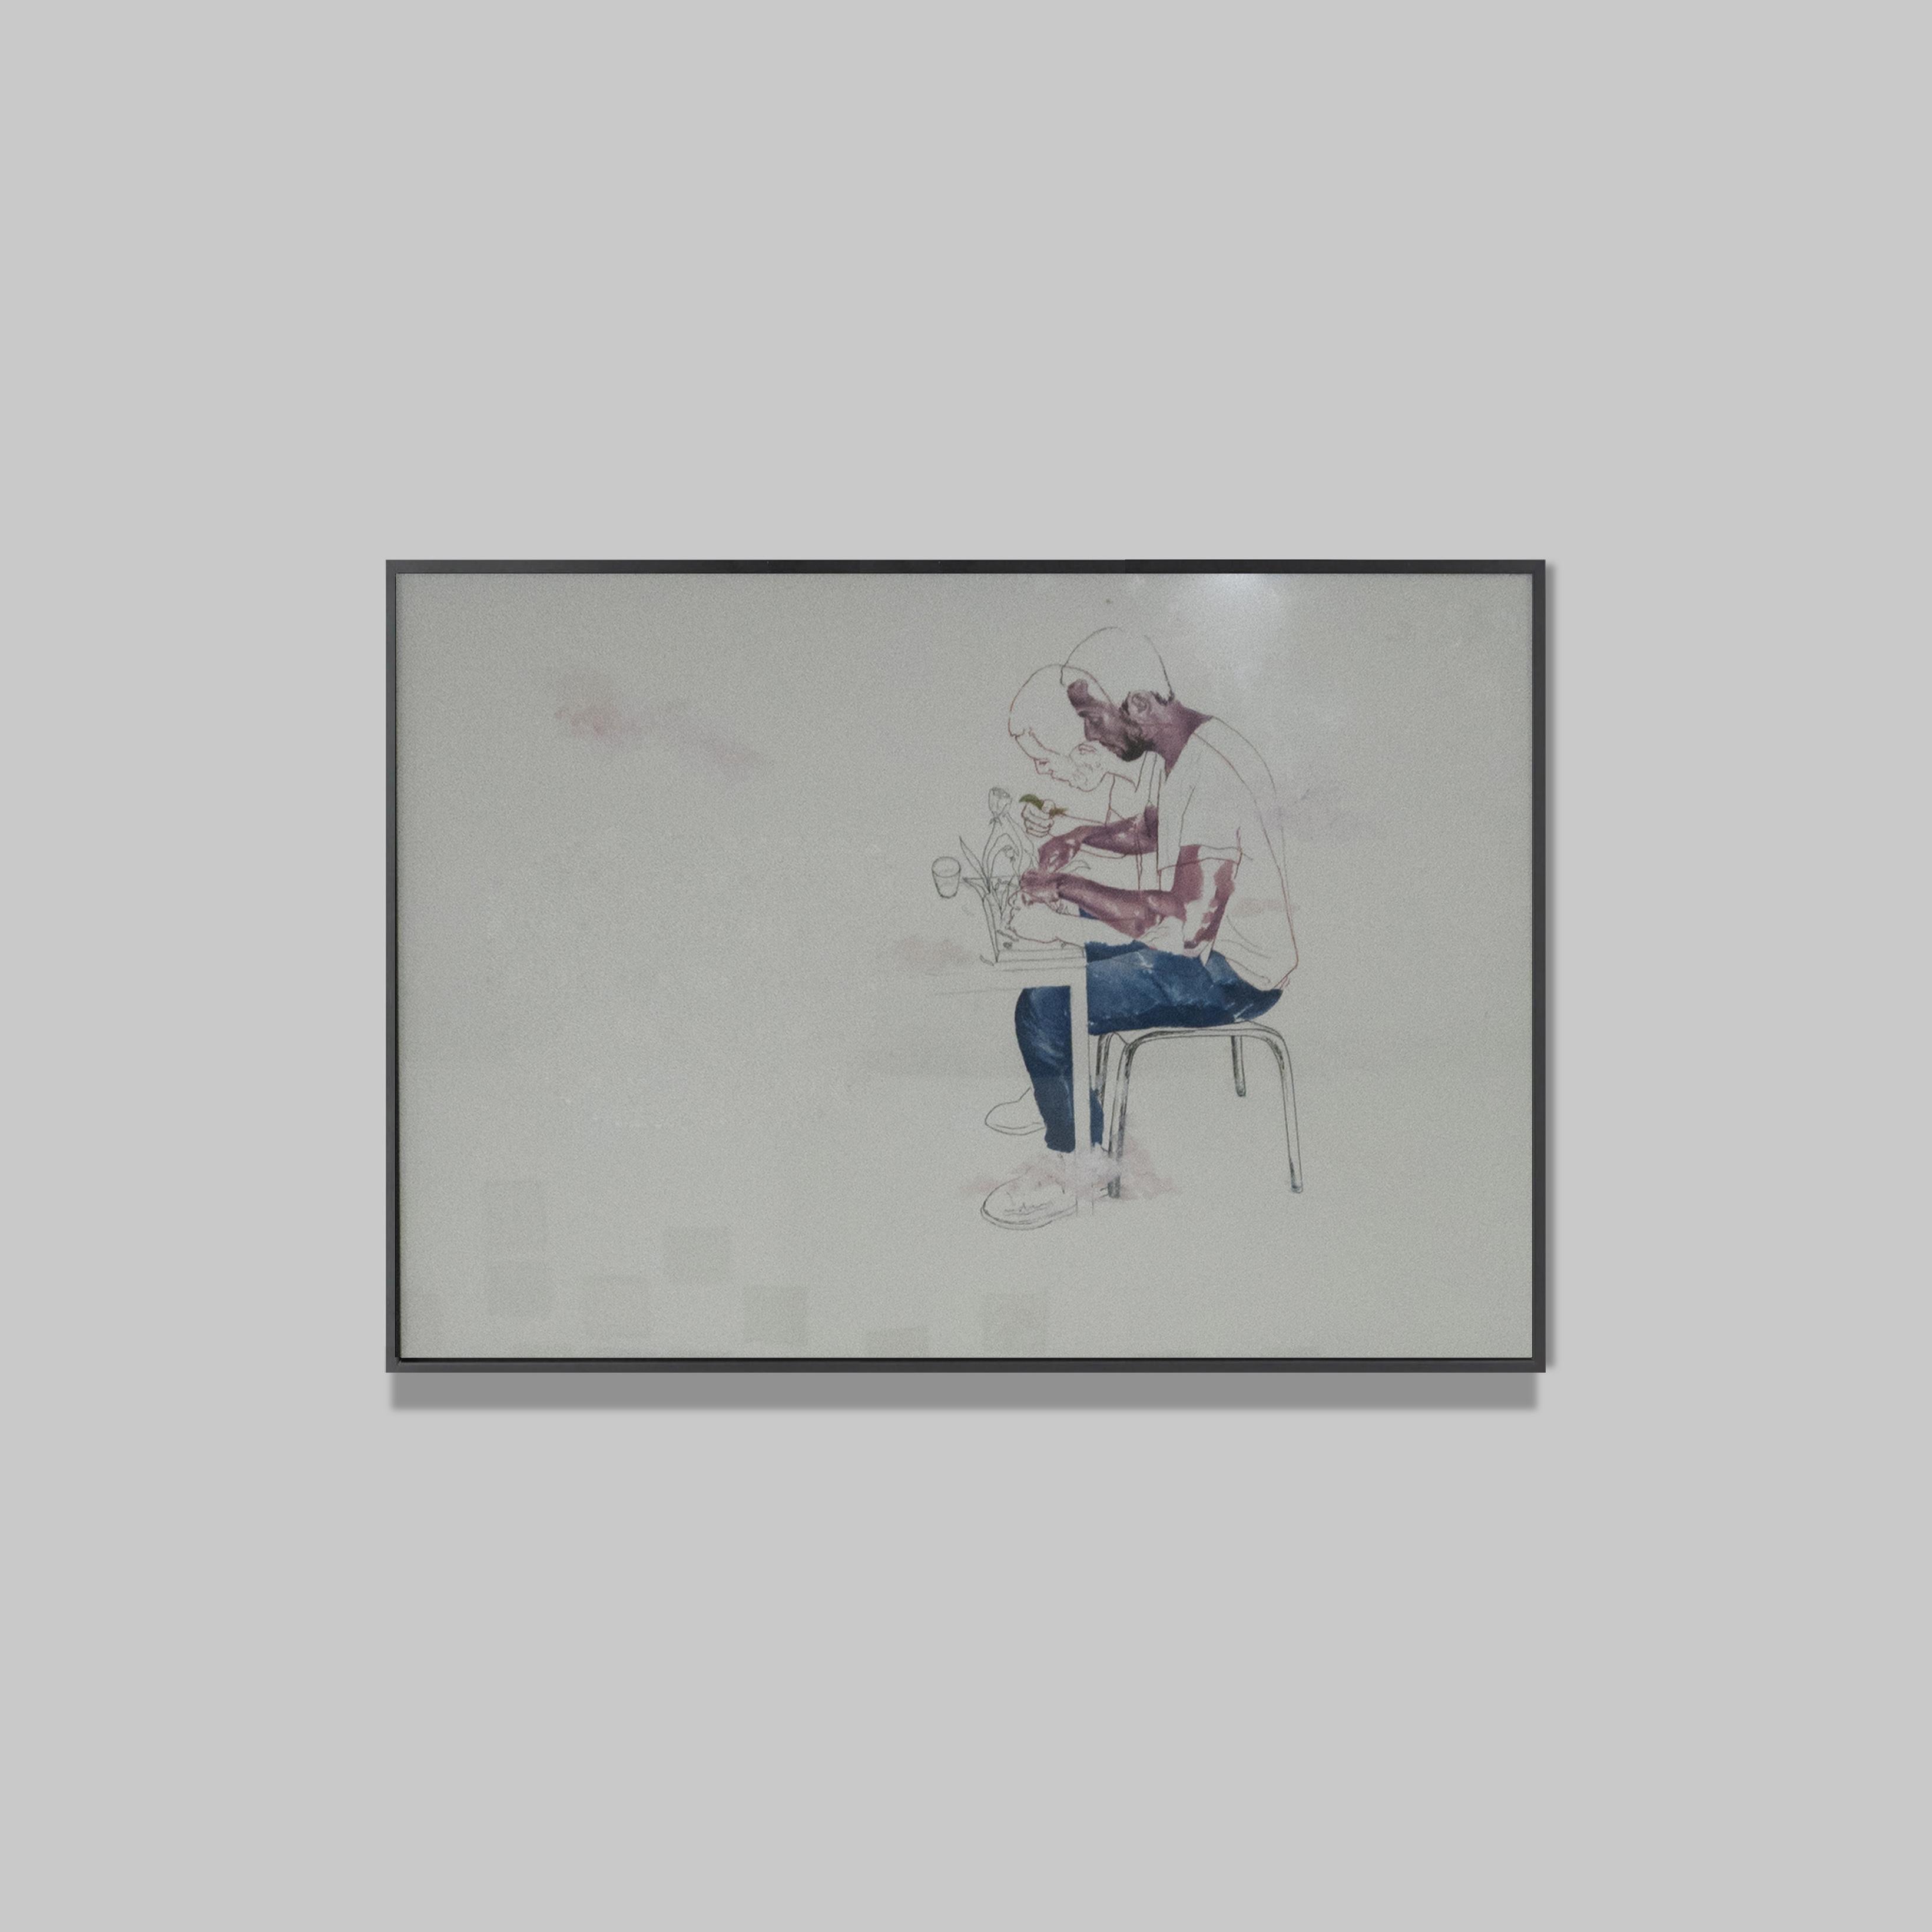 Rahma Lhoussing 
Peinture à l'huile et encre sur papier Canson 
45 x 65 cm